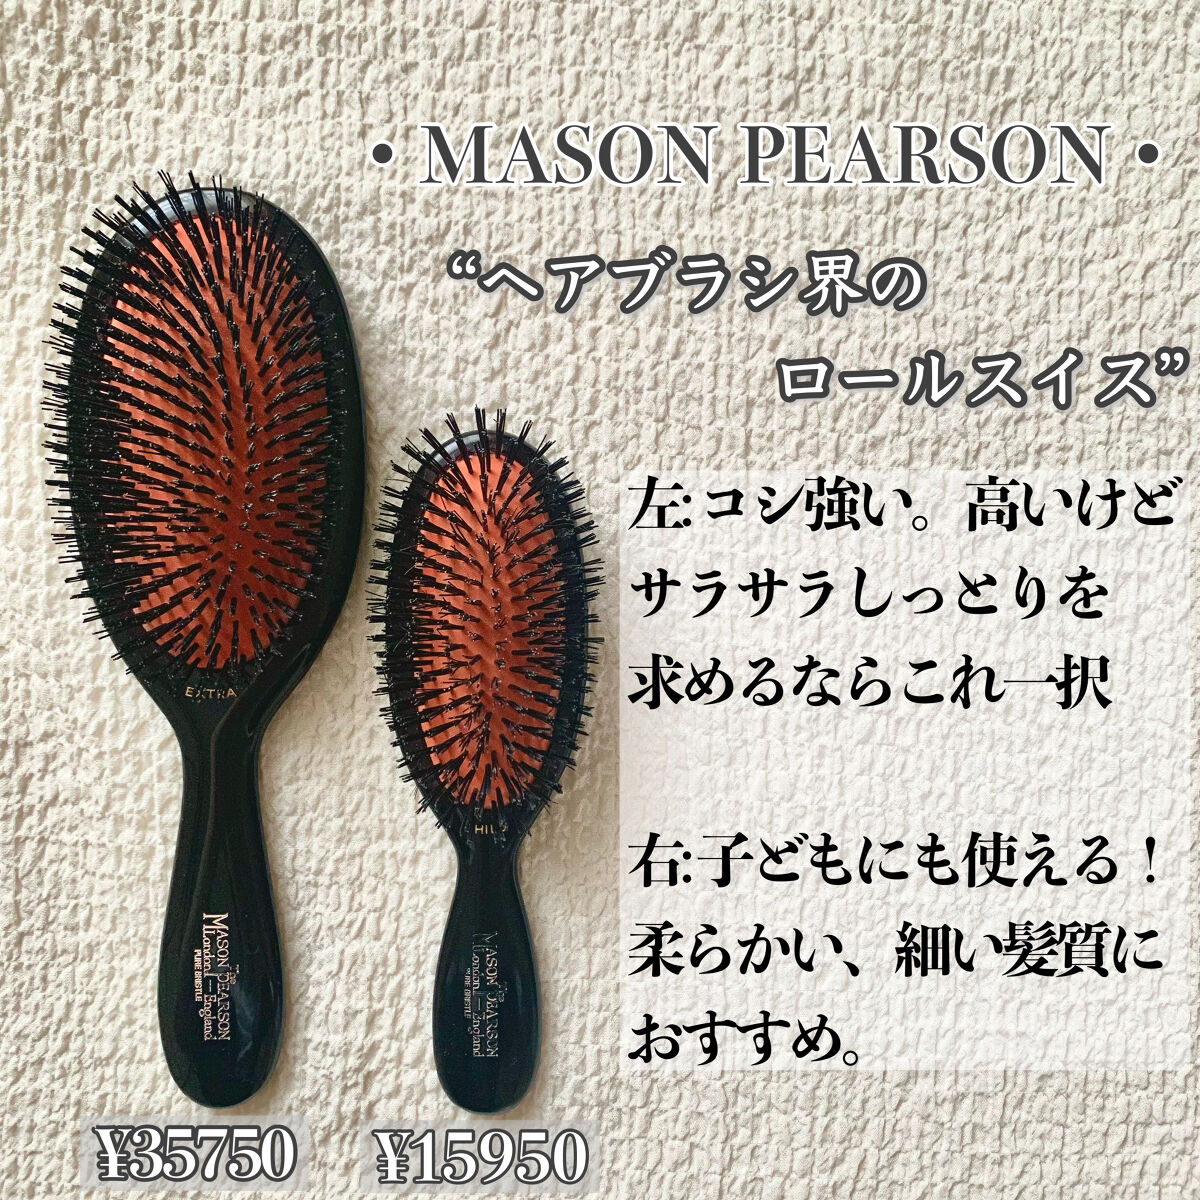 送料無料・選べる4個セット 【正規品】MASON PEARSON エクストラスモールブリッスル 通販